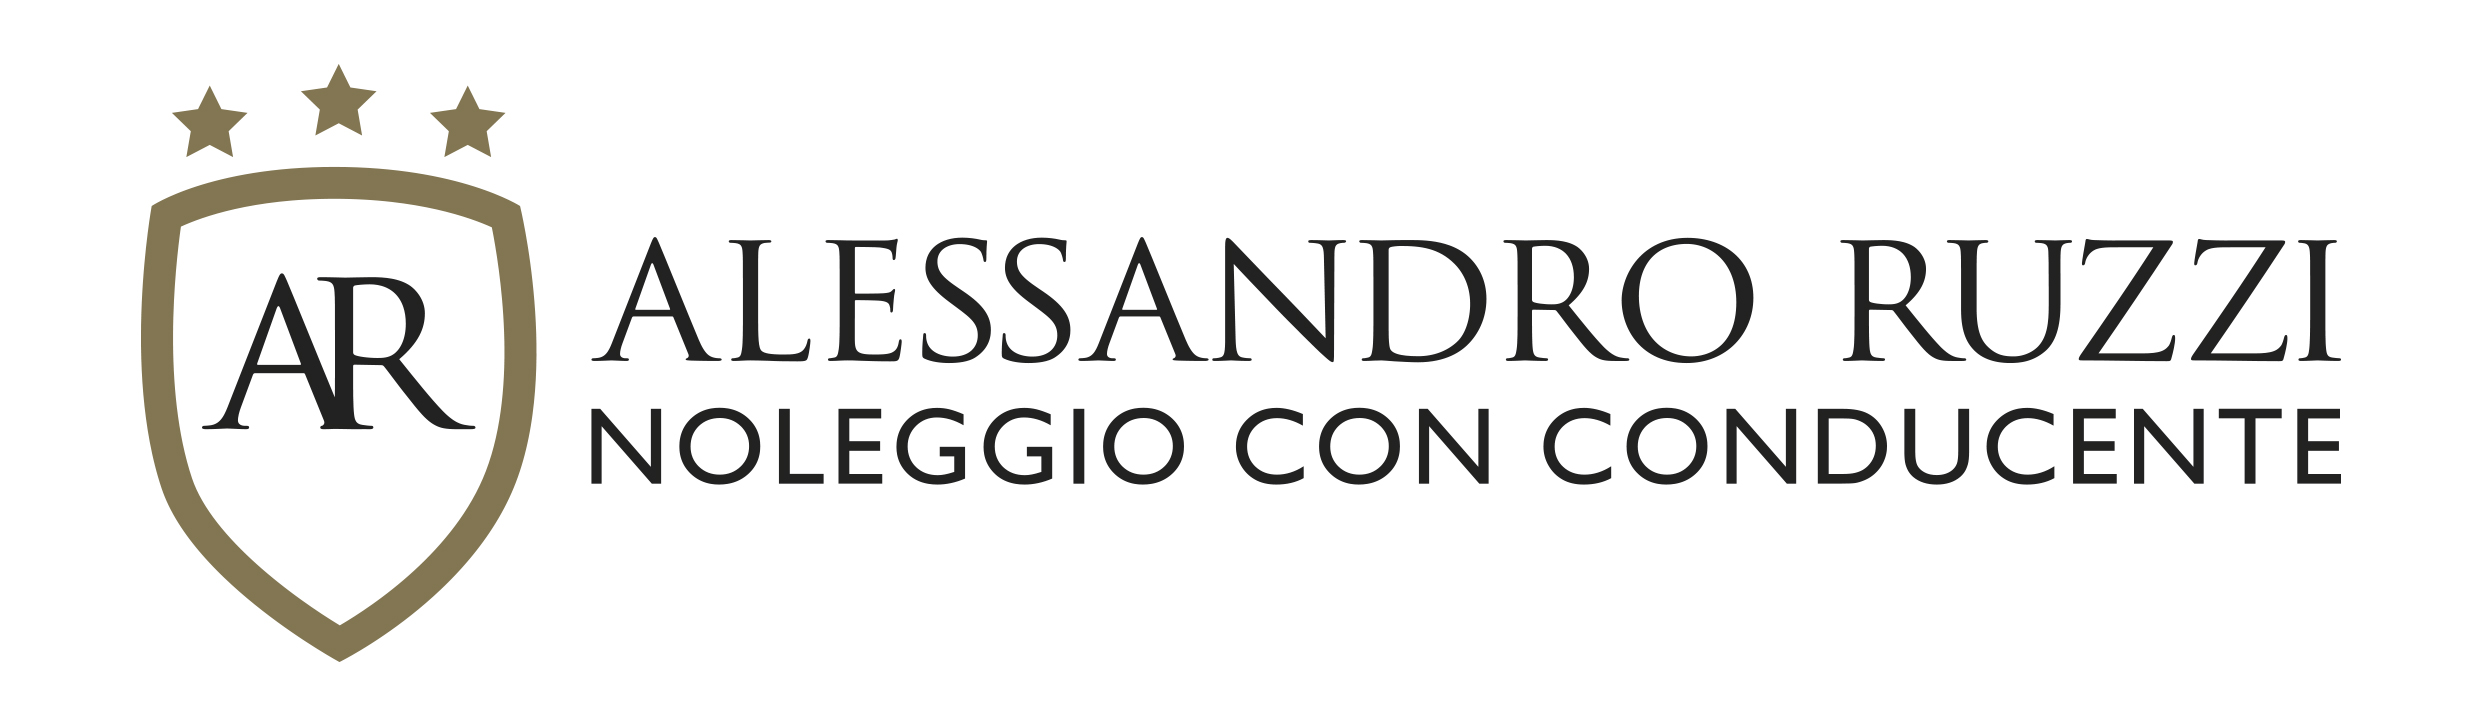 Alessandro Ruzzi offre servizi professionali di Noleggio Con Conducente.